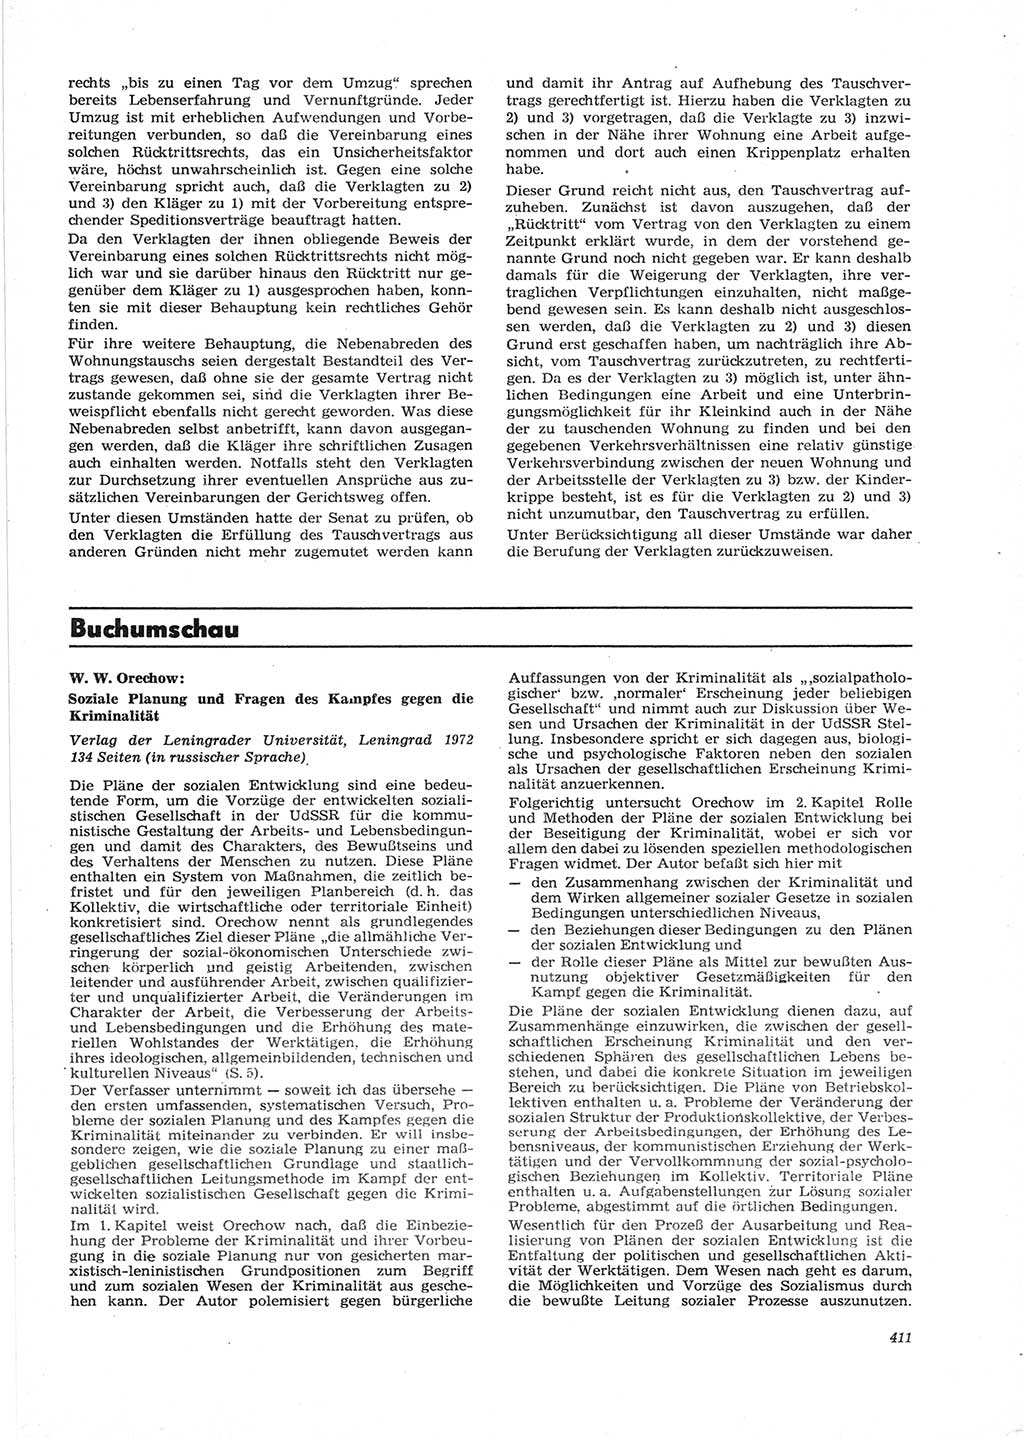 Neue Justiz (NJ), Zeitschrift für Recht und Rechtswissenschaft [Deutsche Demokratische Republik (DDR)], 28. Jahrgang 1974, Seite 411 (NJ DDR 1974, S. 411)